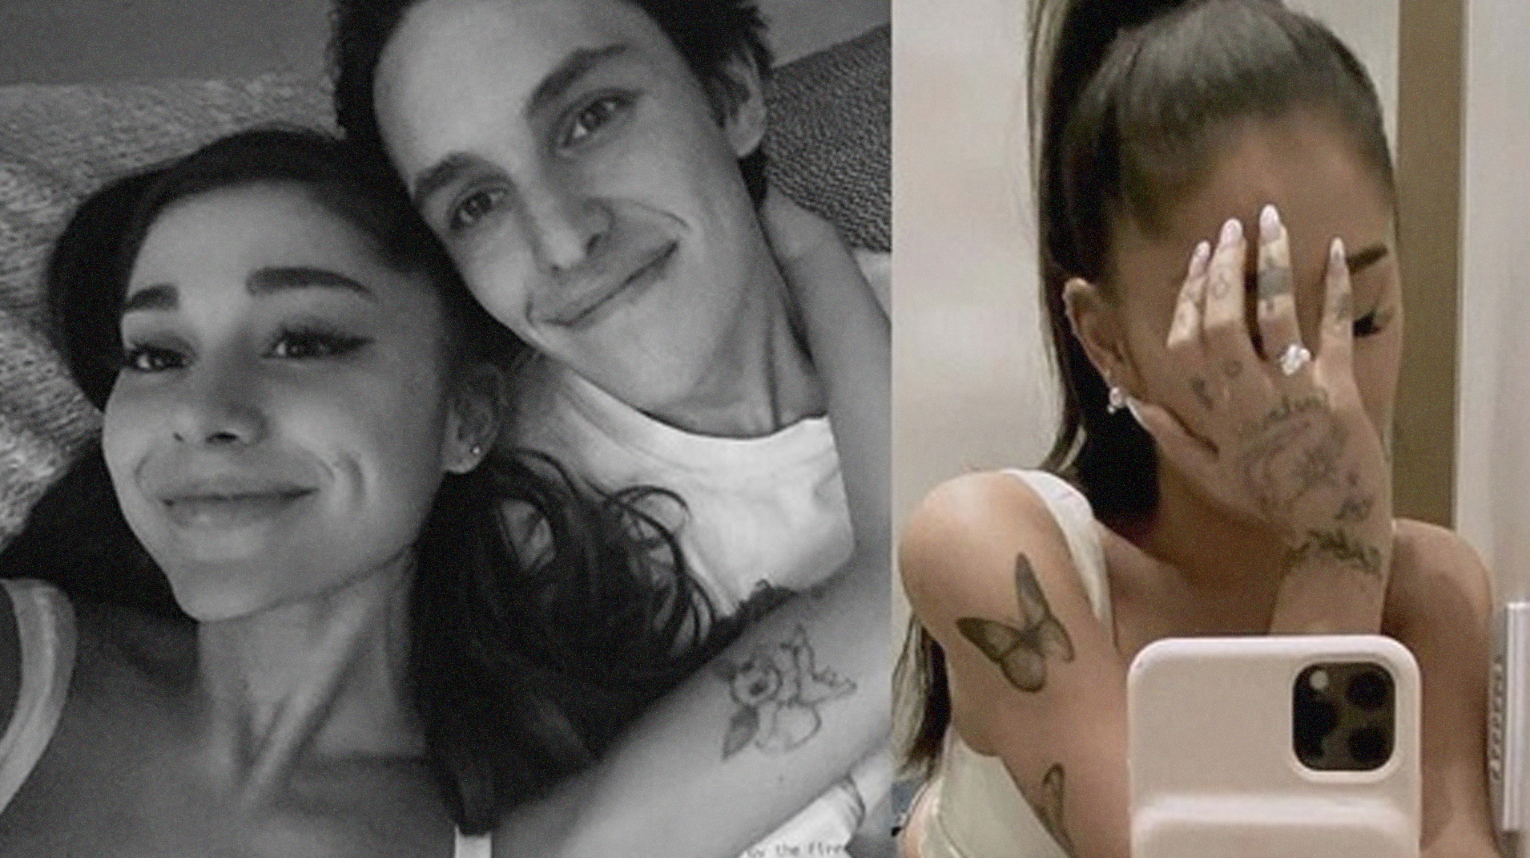 Pasangan penyanyi Ariana Grande dan kekasihnya yang berprofesi pengusaha real estate, Dalton Gomez. (Foto: Instagram)